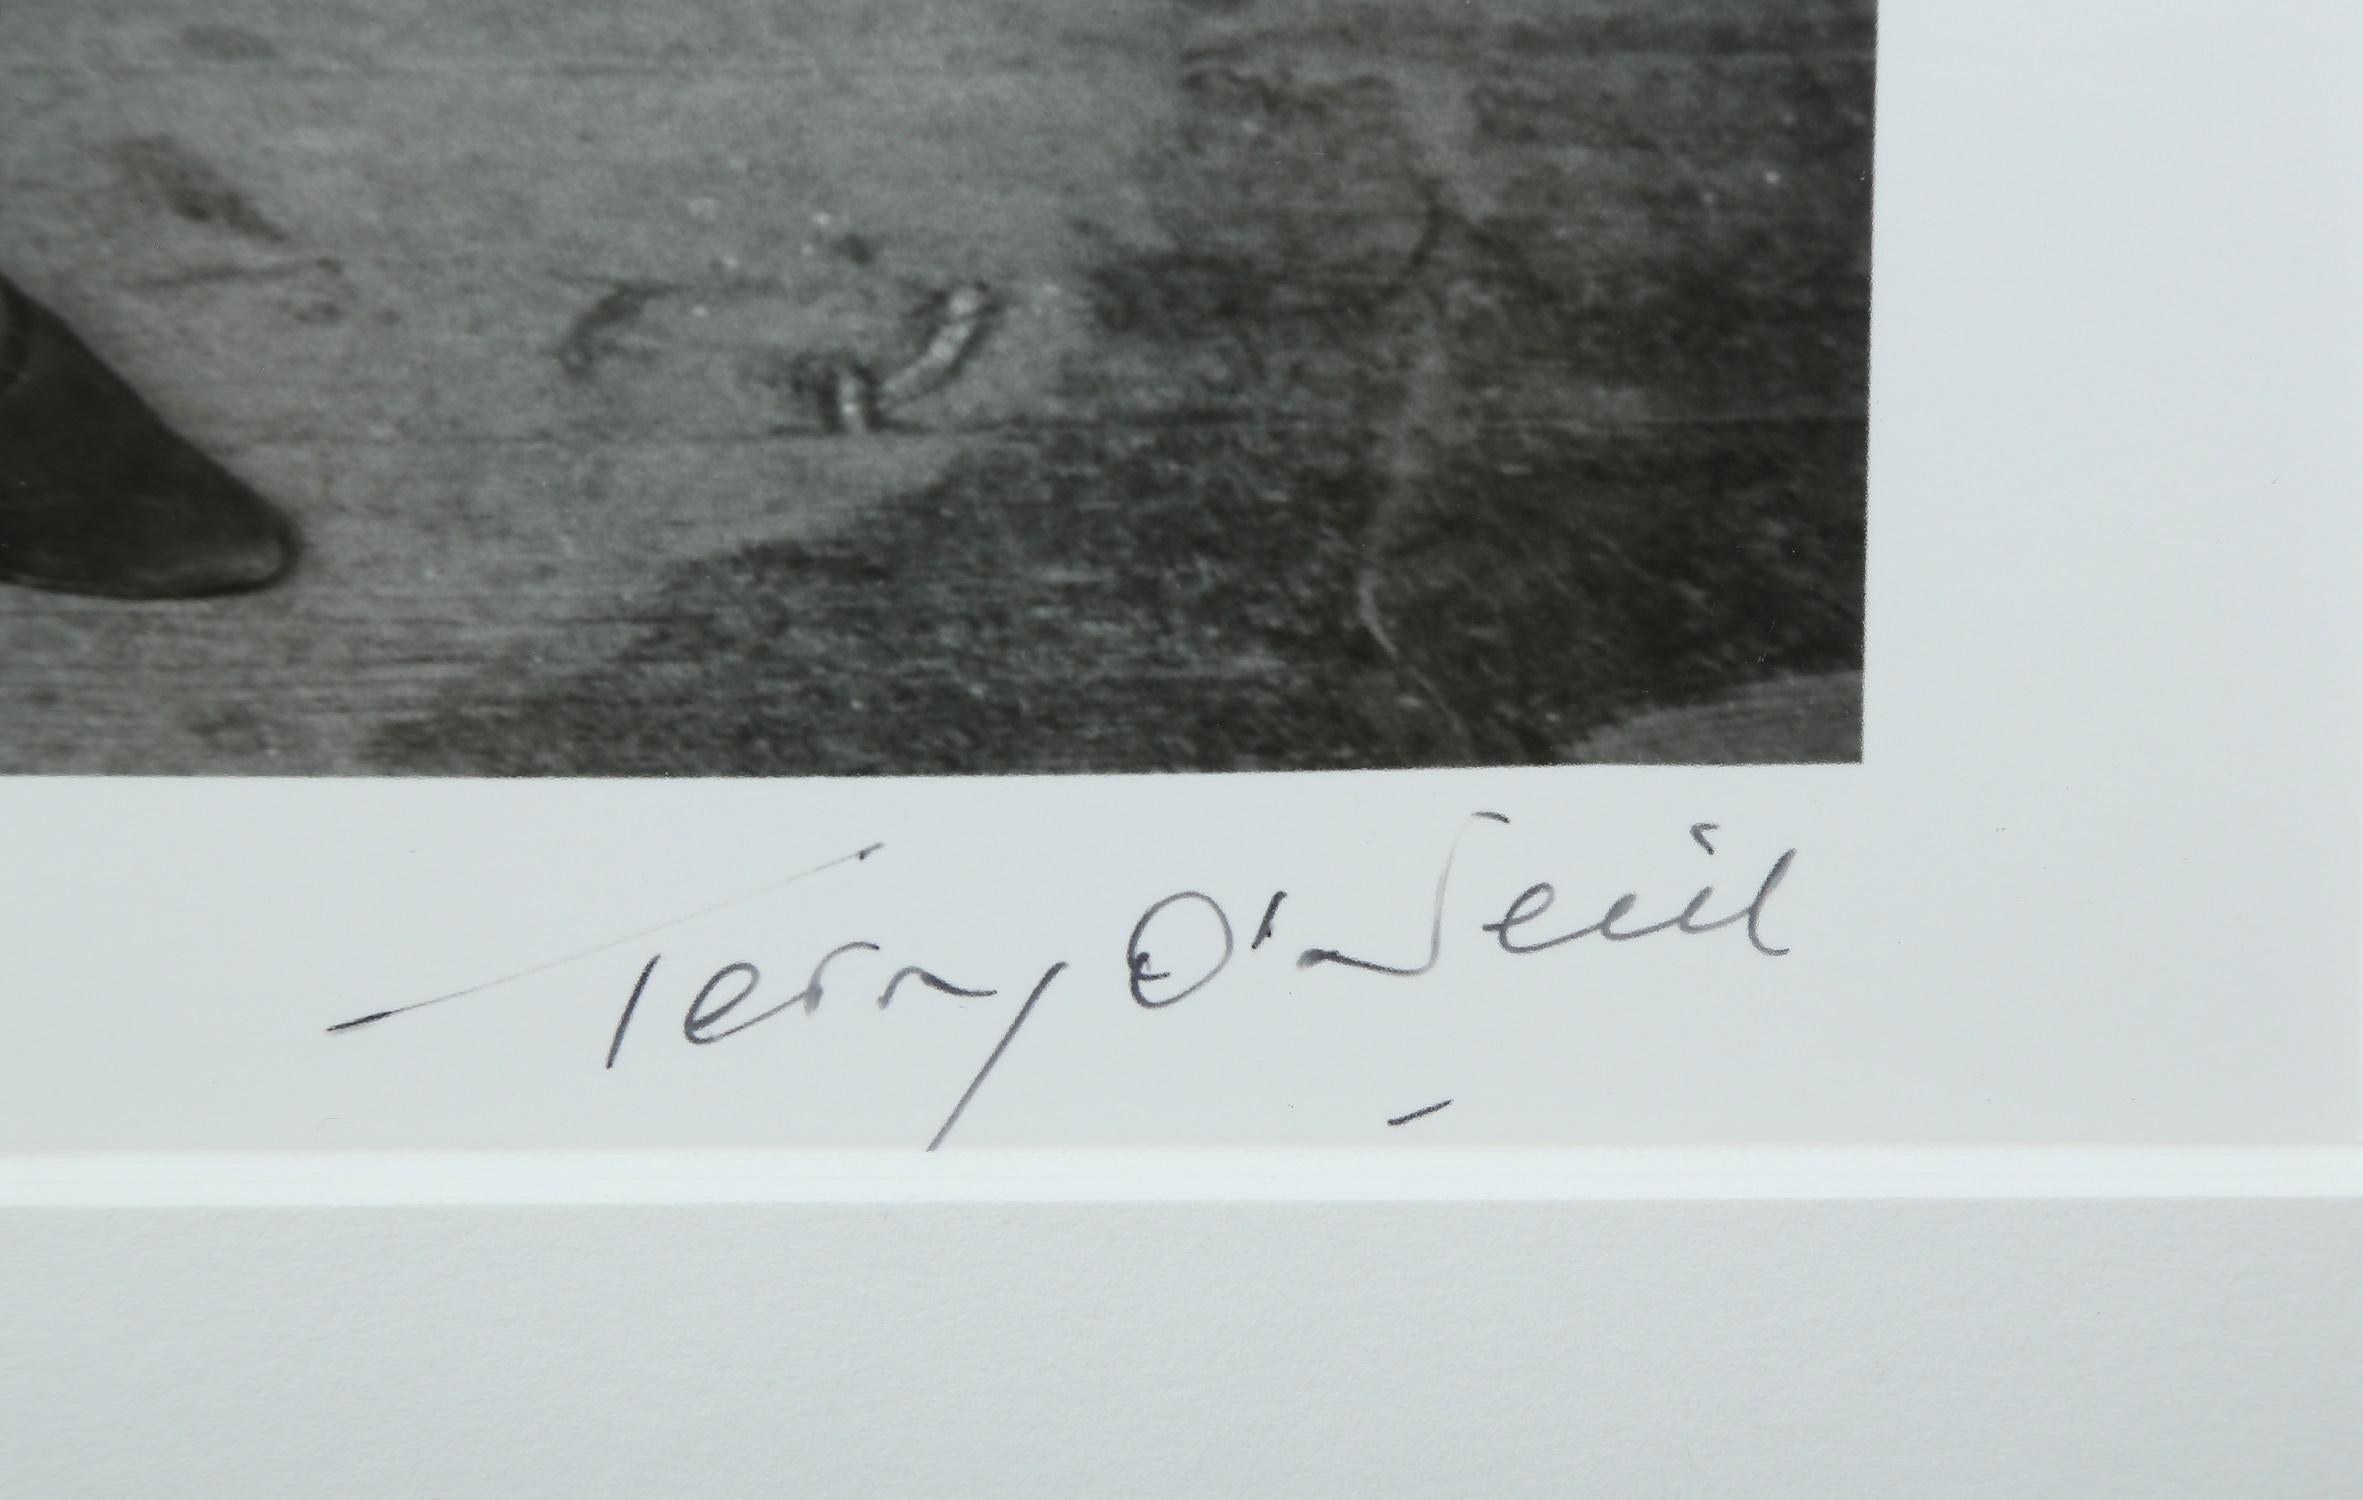 Terry O' Neill Fotografie von Jean Shrimpton in Schwarz-Weiß:: 1964 2